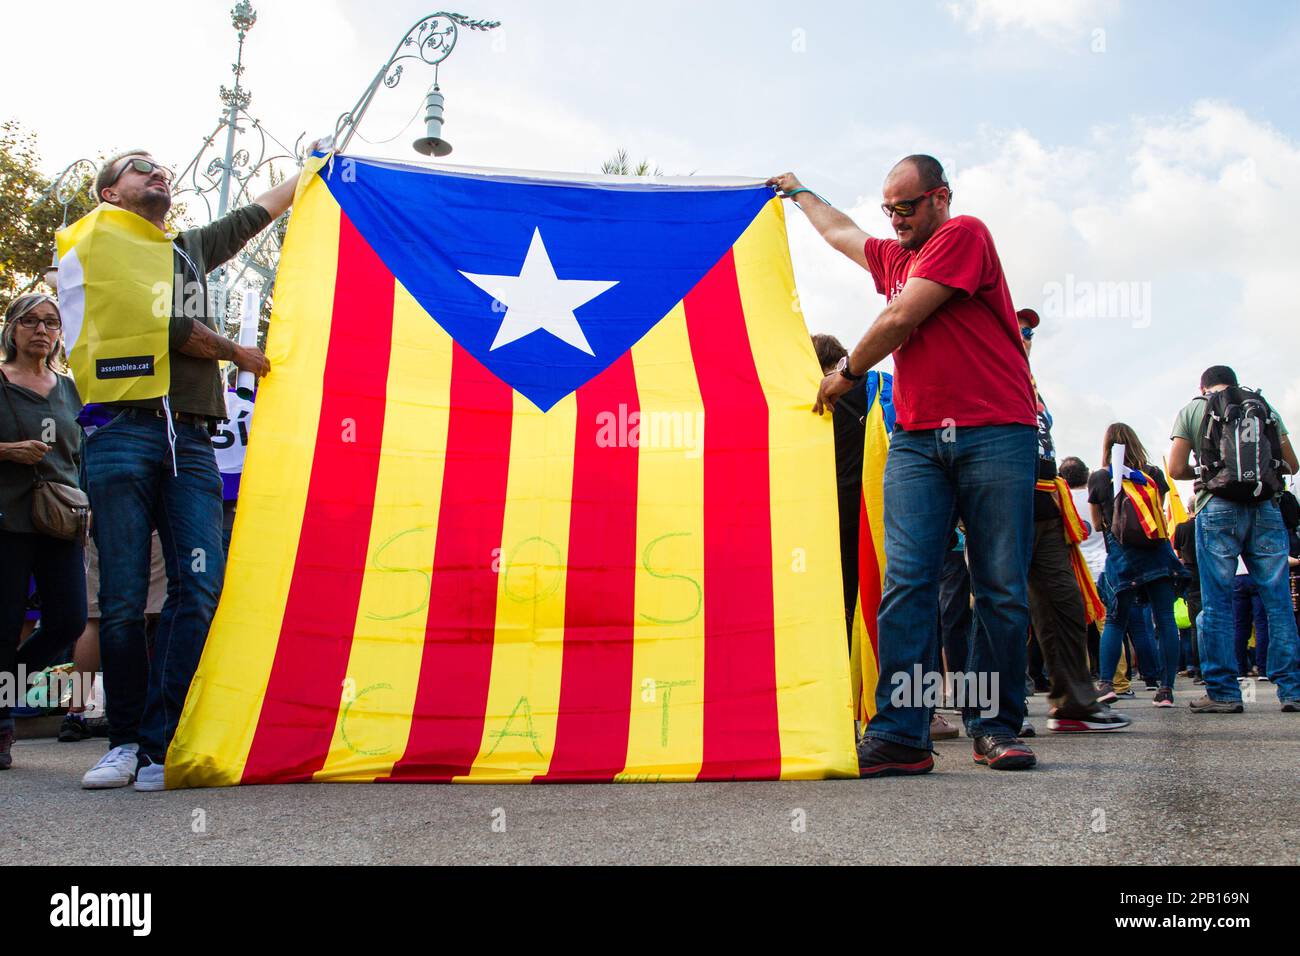 BARCELLONA, SPAGNA. 10. Ottobre 2017. I sostenitori dell'indipendenza catalana si riuniscono davanti al Parlamento catalano per un'azione del presidente delle regioni Char Foto Stock